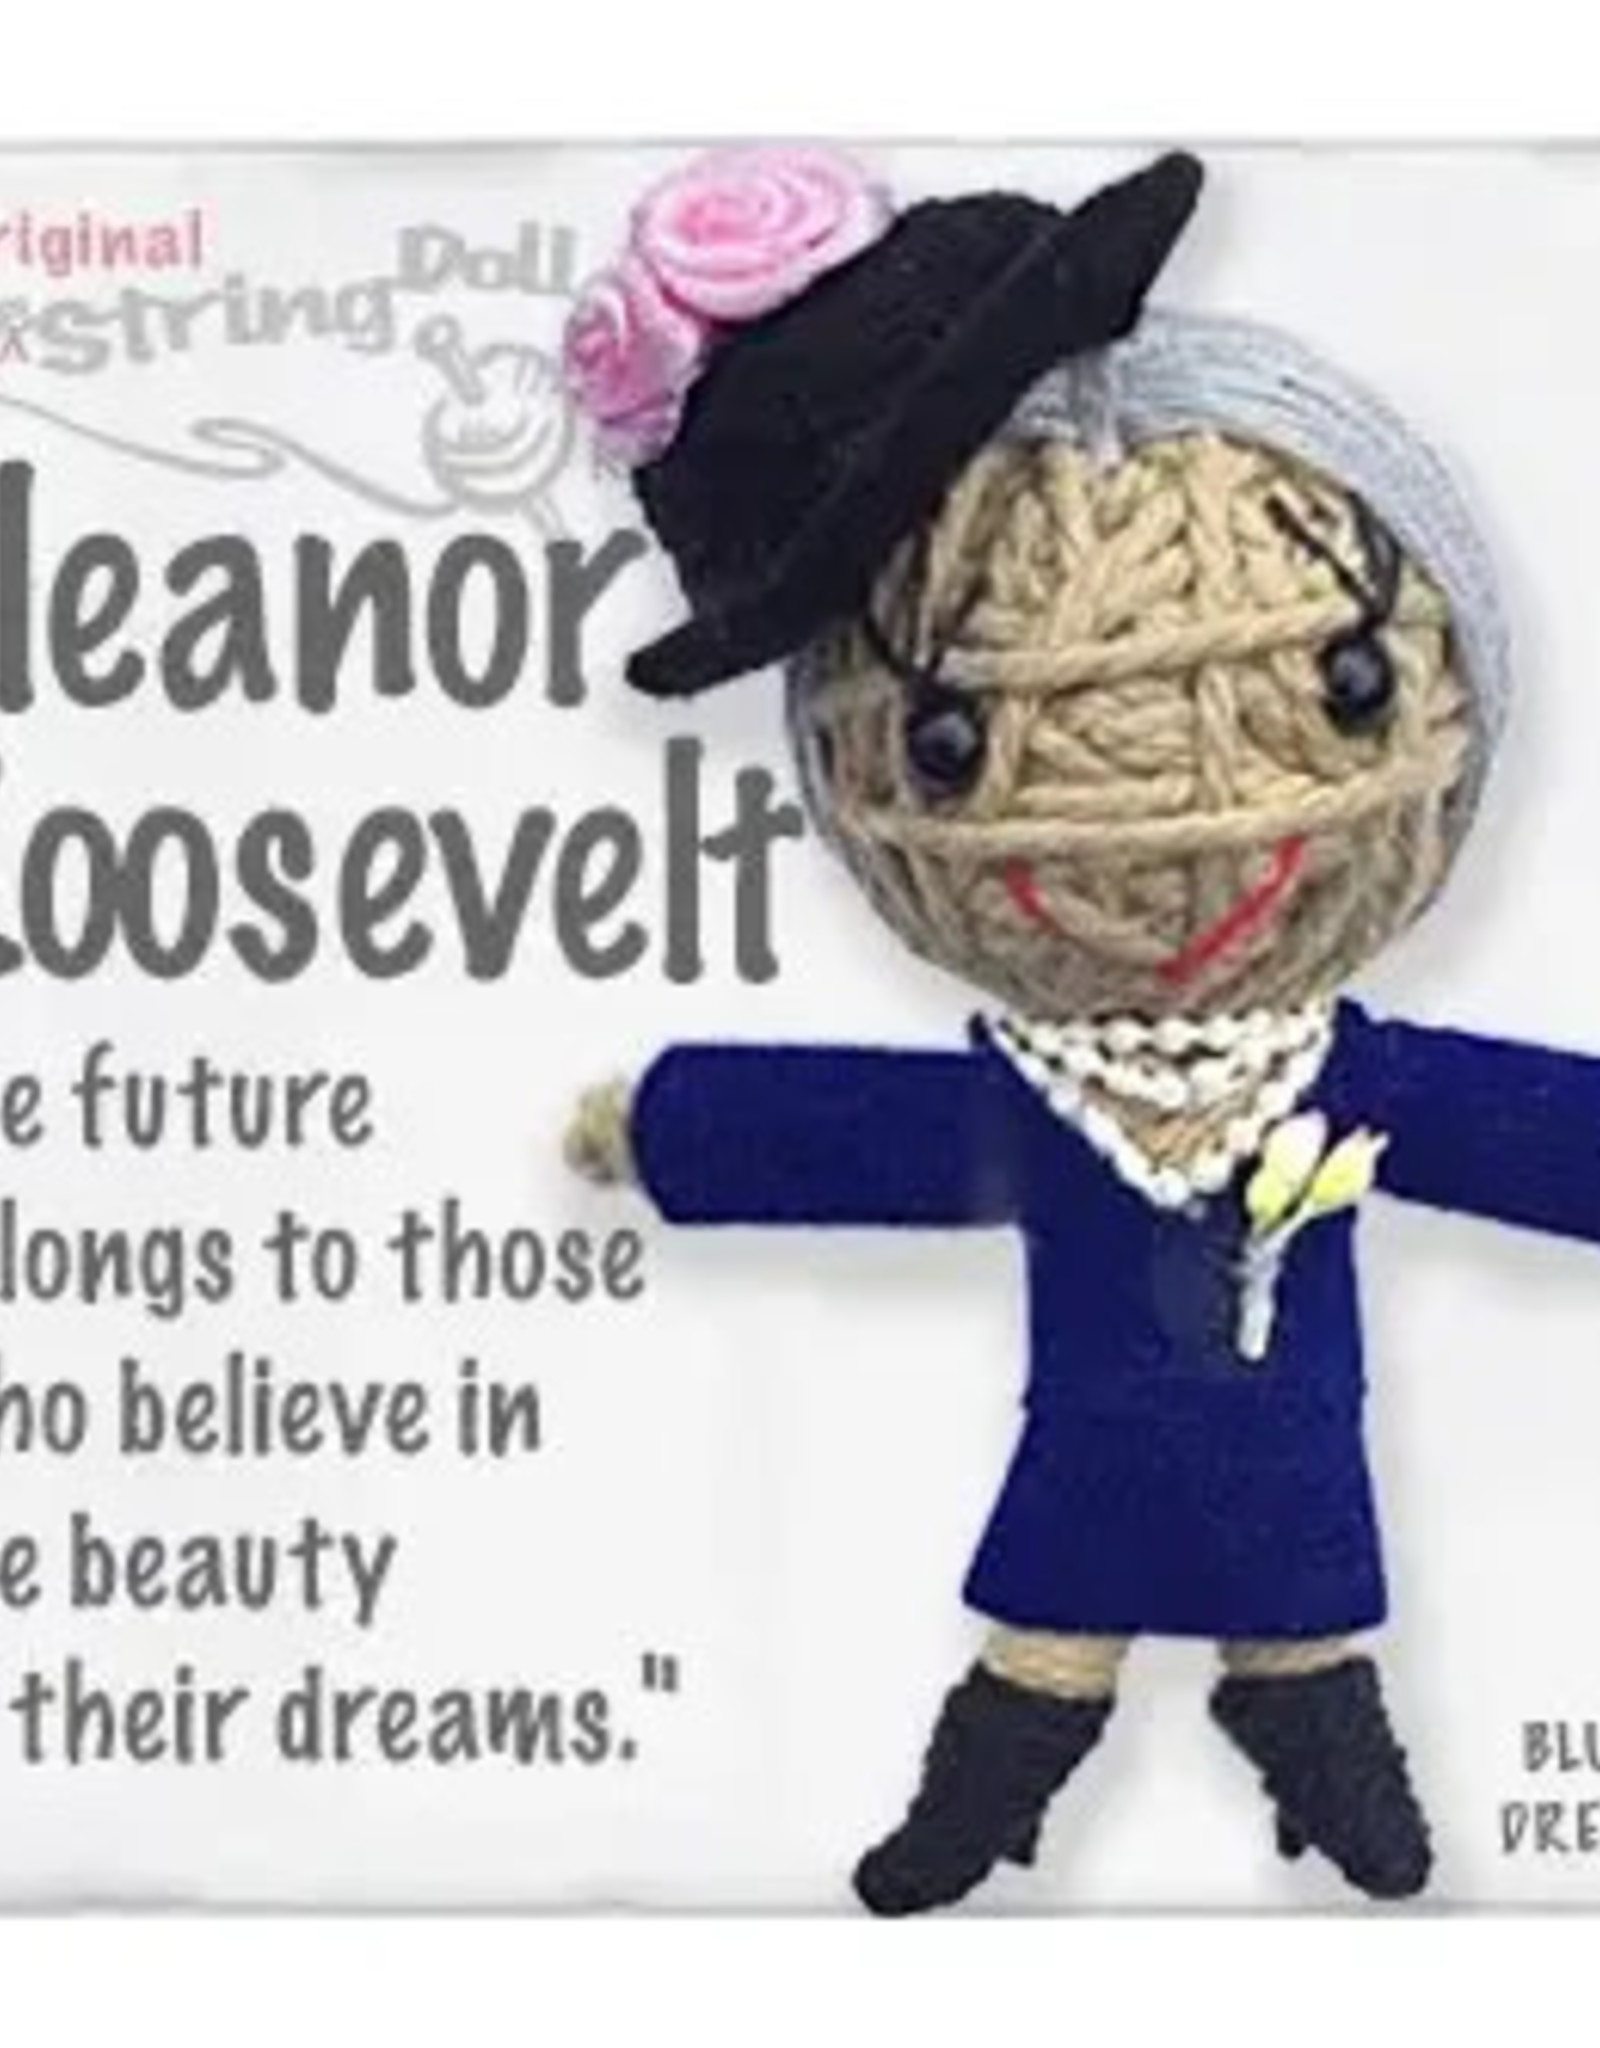 Kamibashi Eleanor Roosevelt